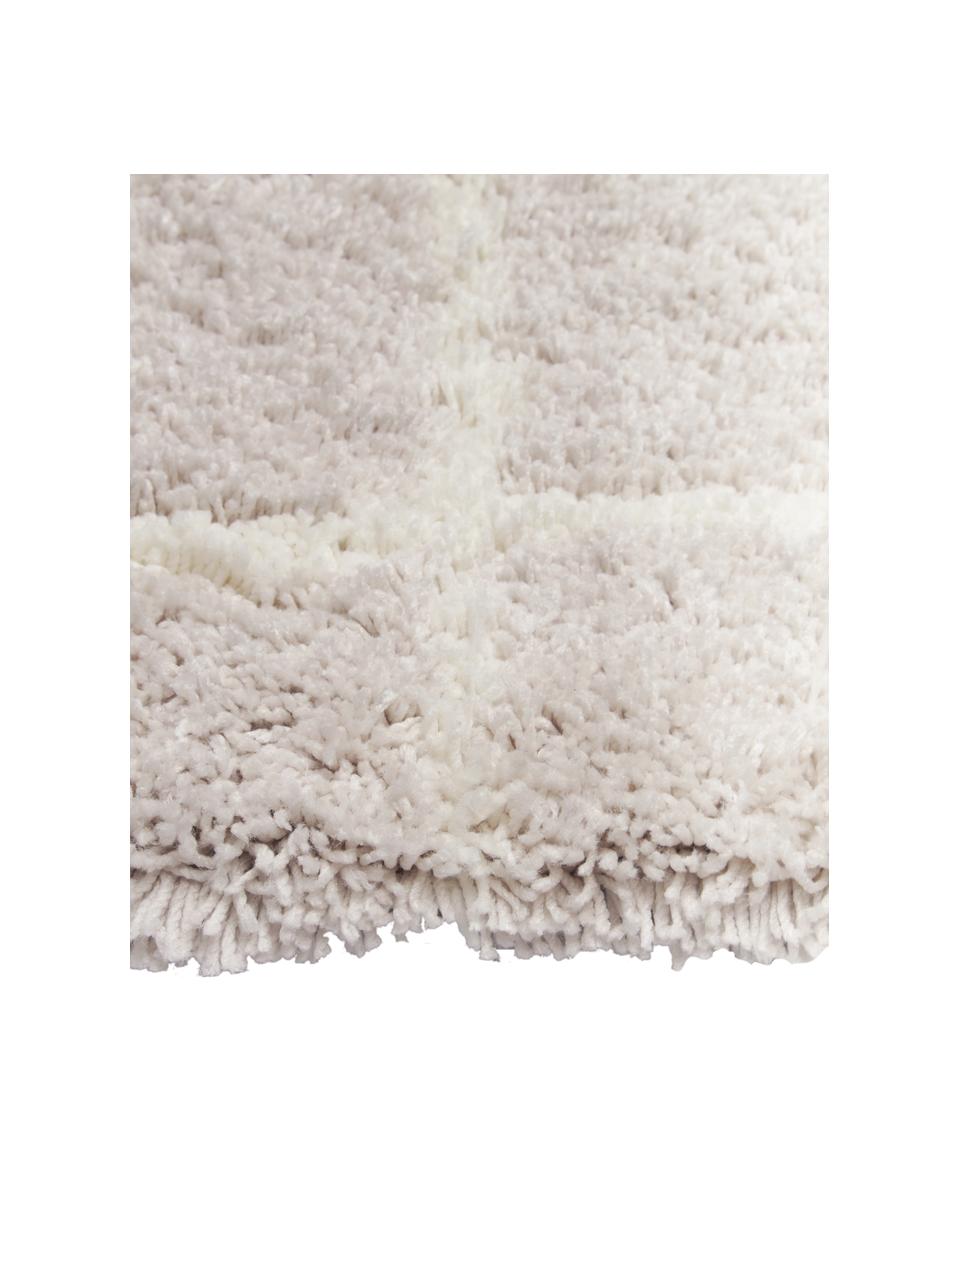 Flauschiger Hochflor-Teppich Amelie in Beige, handgetuftet, Flor: 100 % Polyester, Beige, Cremeweiß, B 80 x L 150 cm (Größe XS)